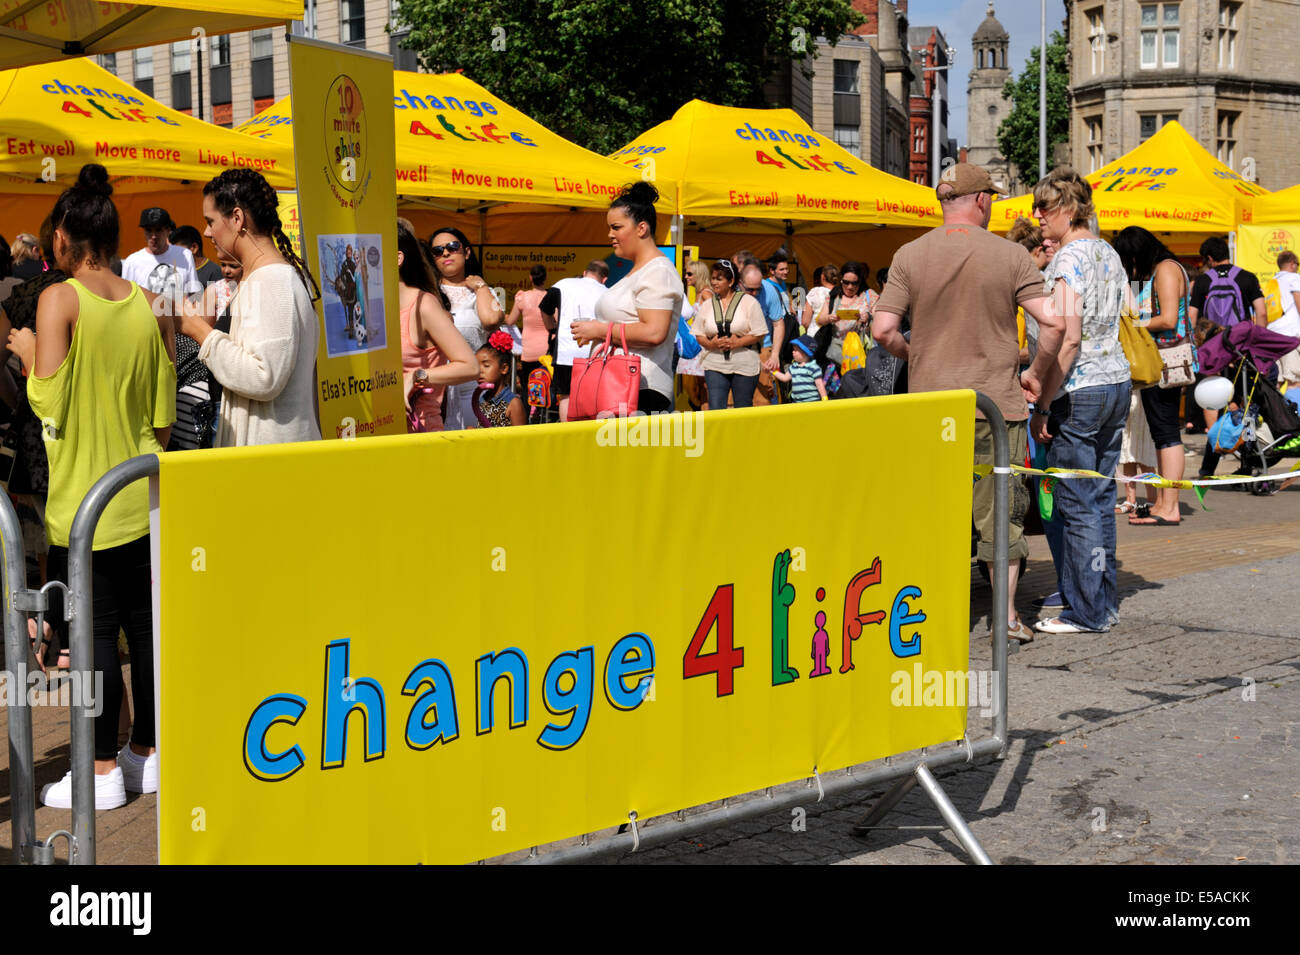 Programma di sanità pubblica Chang4Life run dal Dipartimento della sanità per l'Inghilterra. Utilizza slogan "mangiare bene, spostare più, vivono più a lungo" Foto Stock